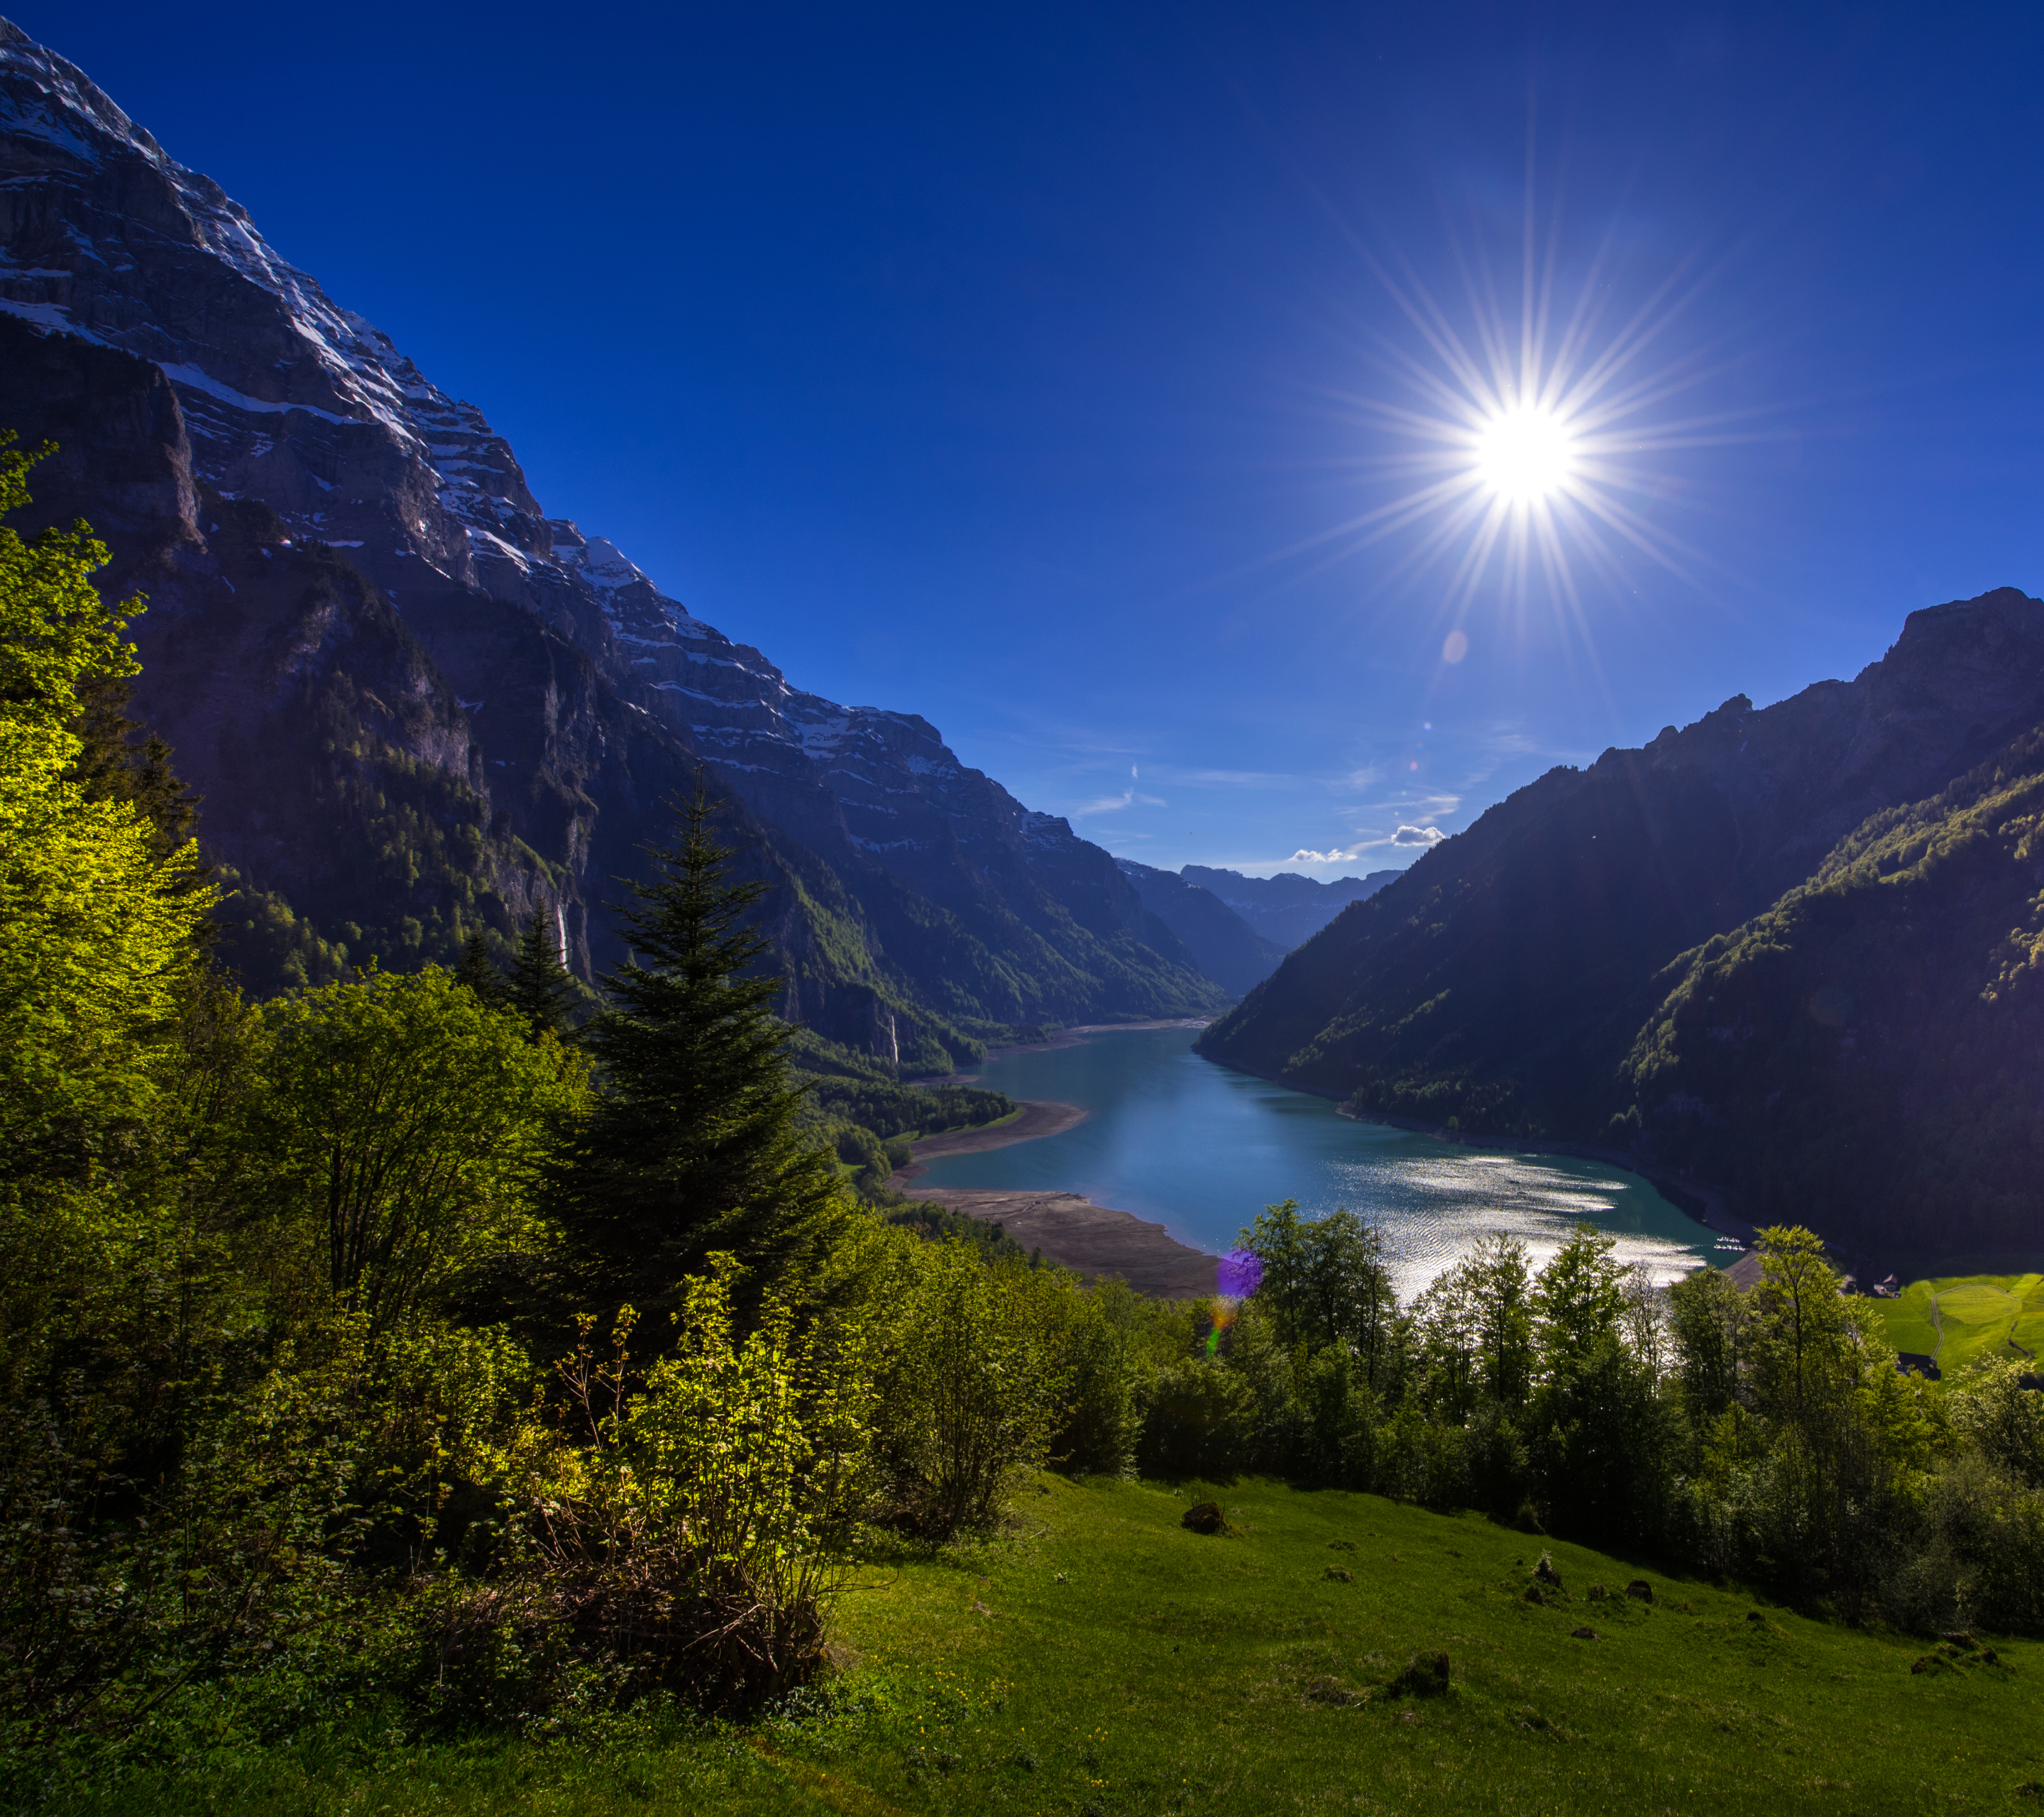 Descarga gratuita de fondo de pantalla para móvil de Paisaje, Sol, Montaña, Lago, Suiza, Tierra/naturaleza.